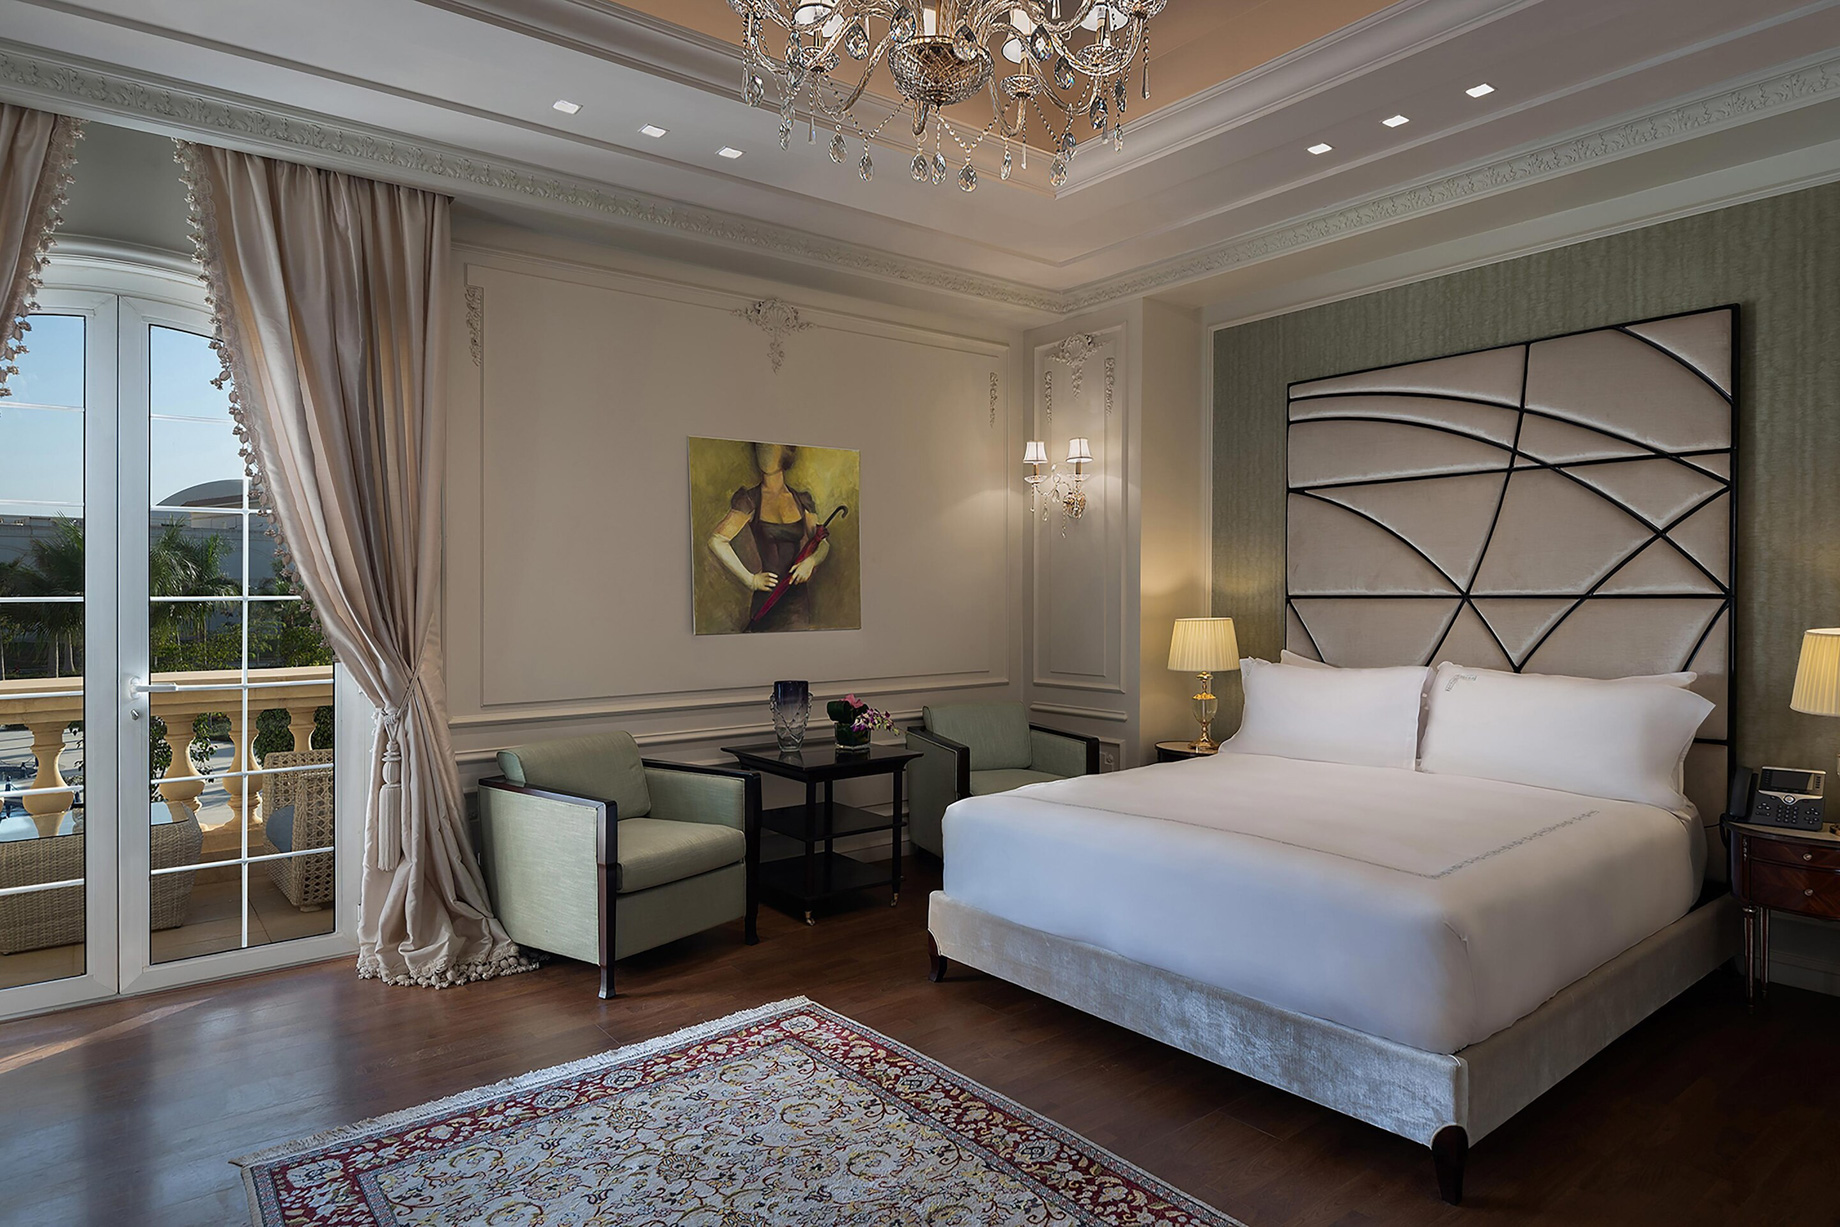 The St. Regis Almasa Hotel – Cairo, Egypt – Villa Master Bedroom